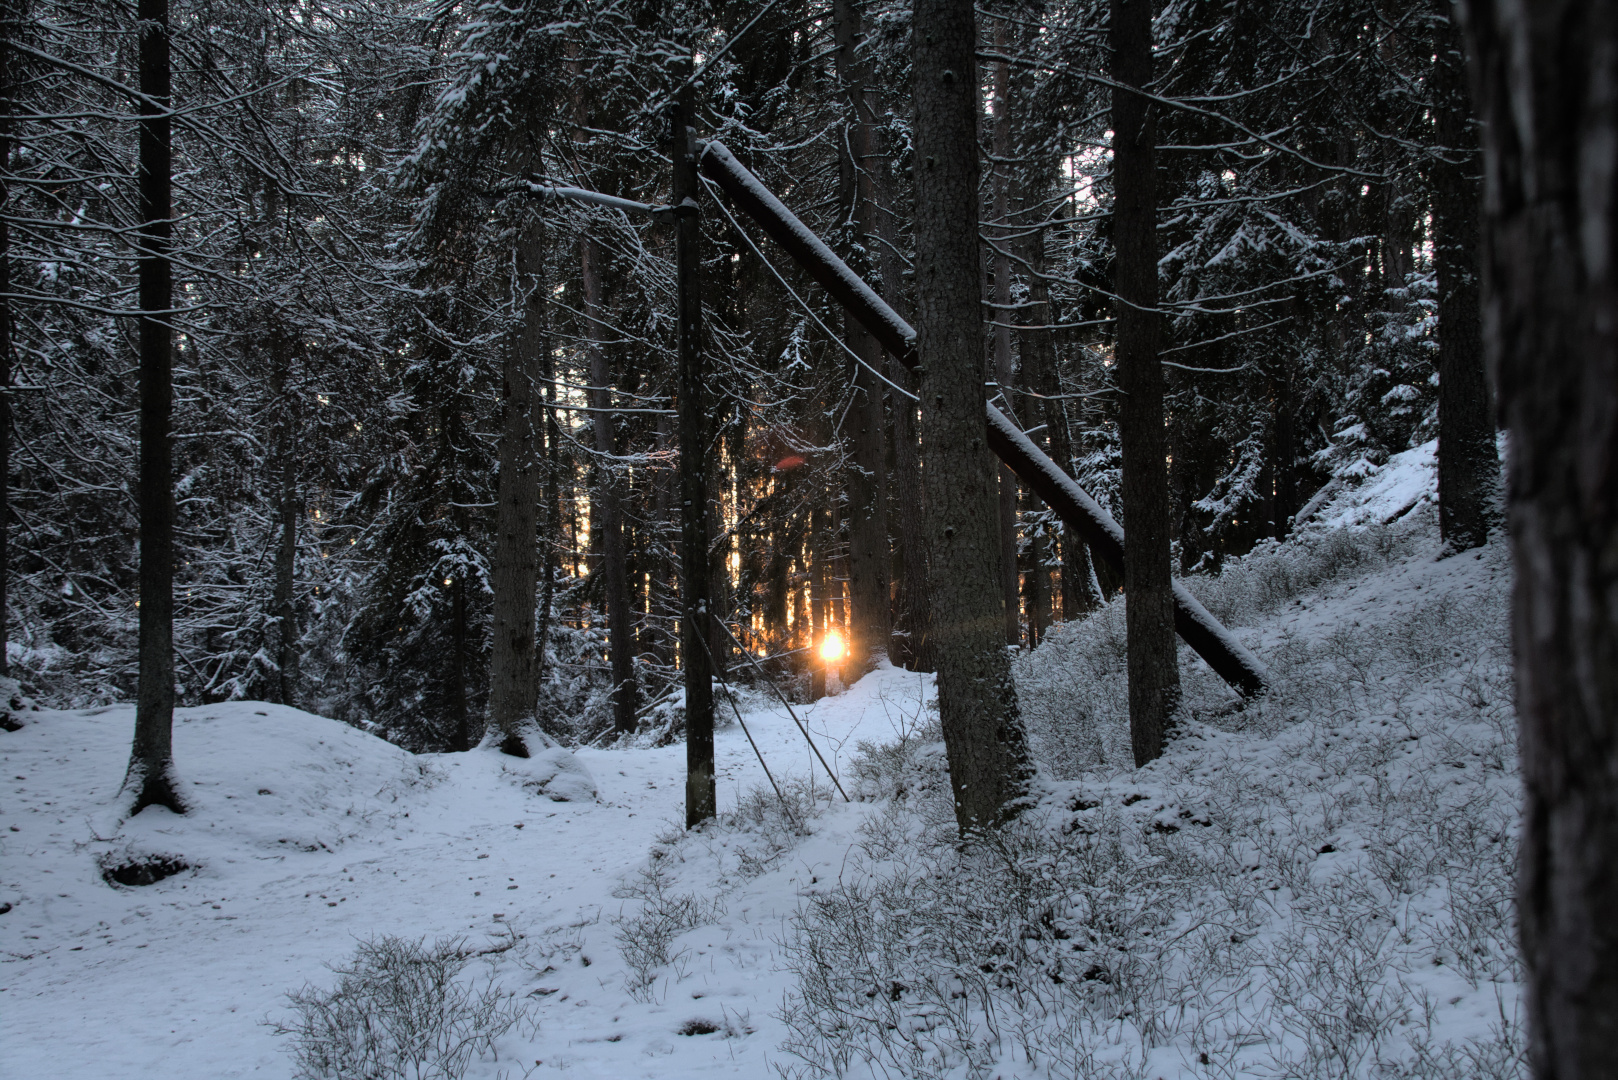 Sol pondo-se atrás das árvores num bosque coberto de neveo.